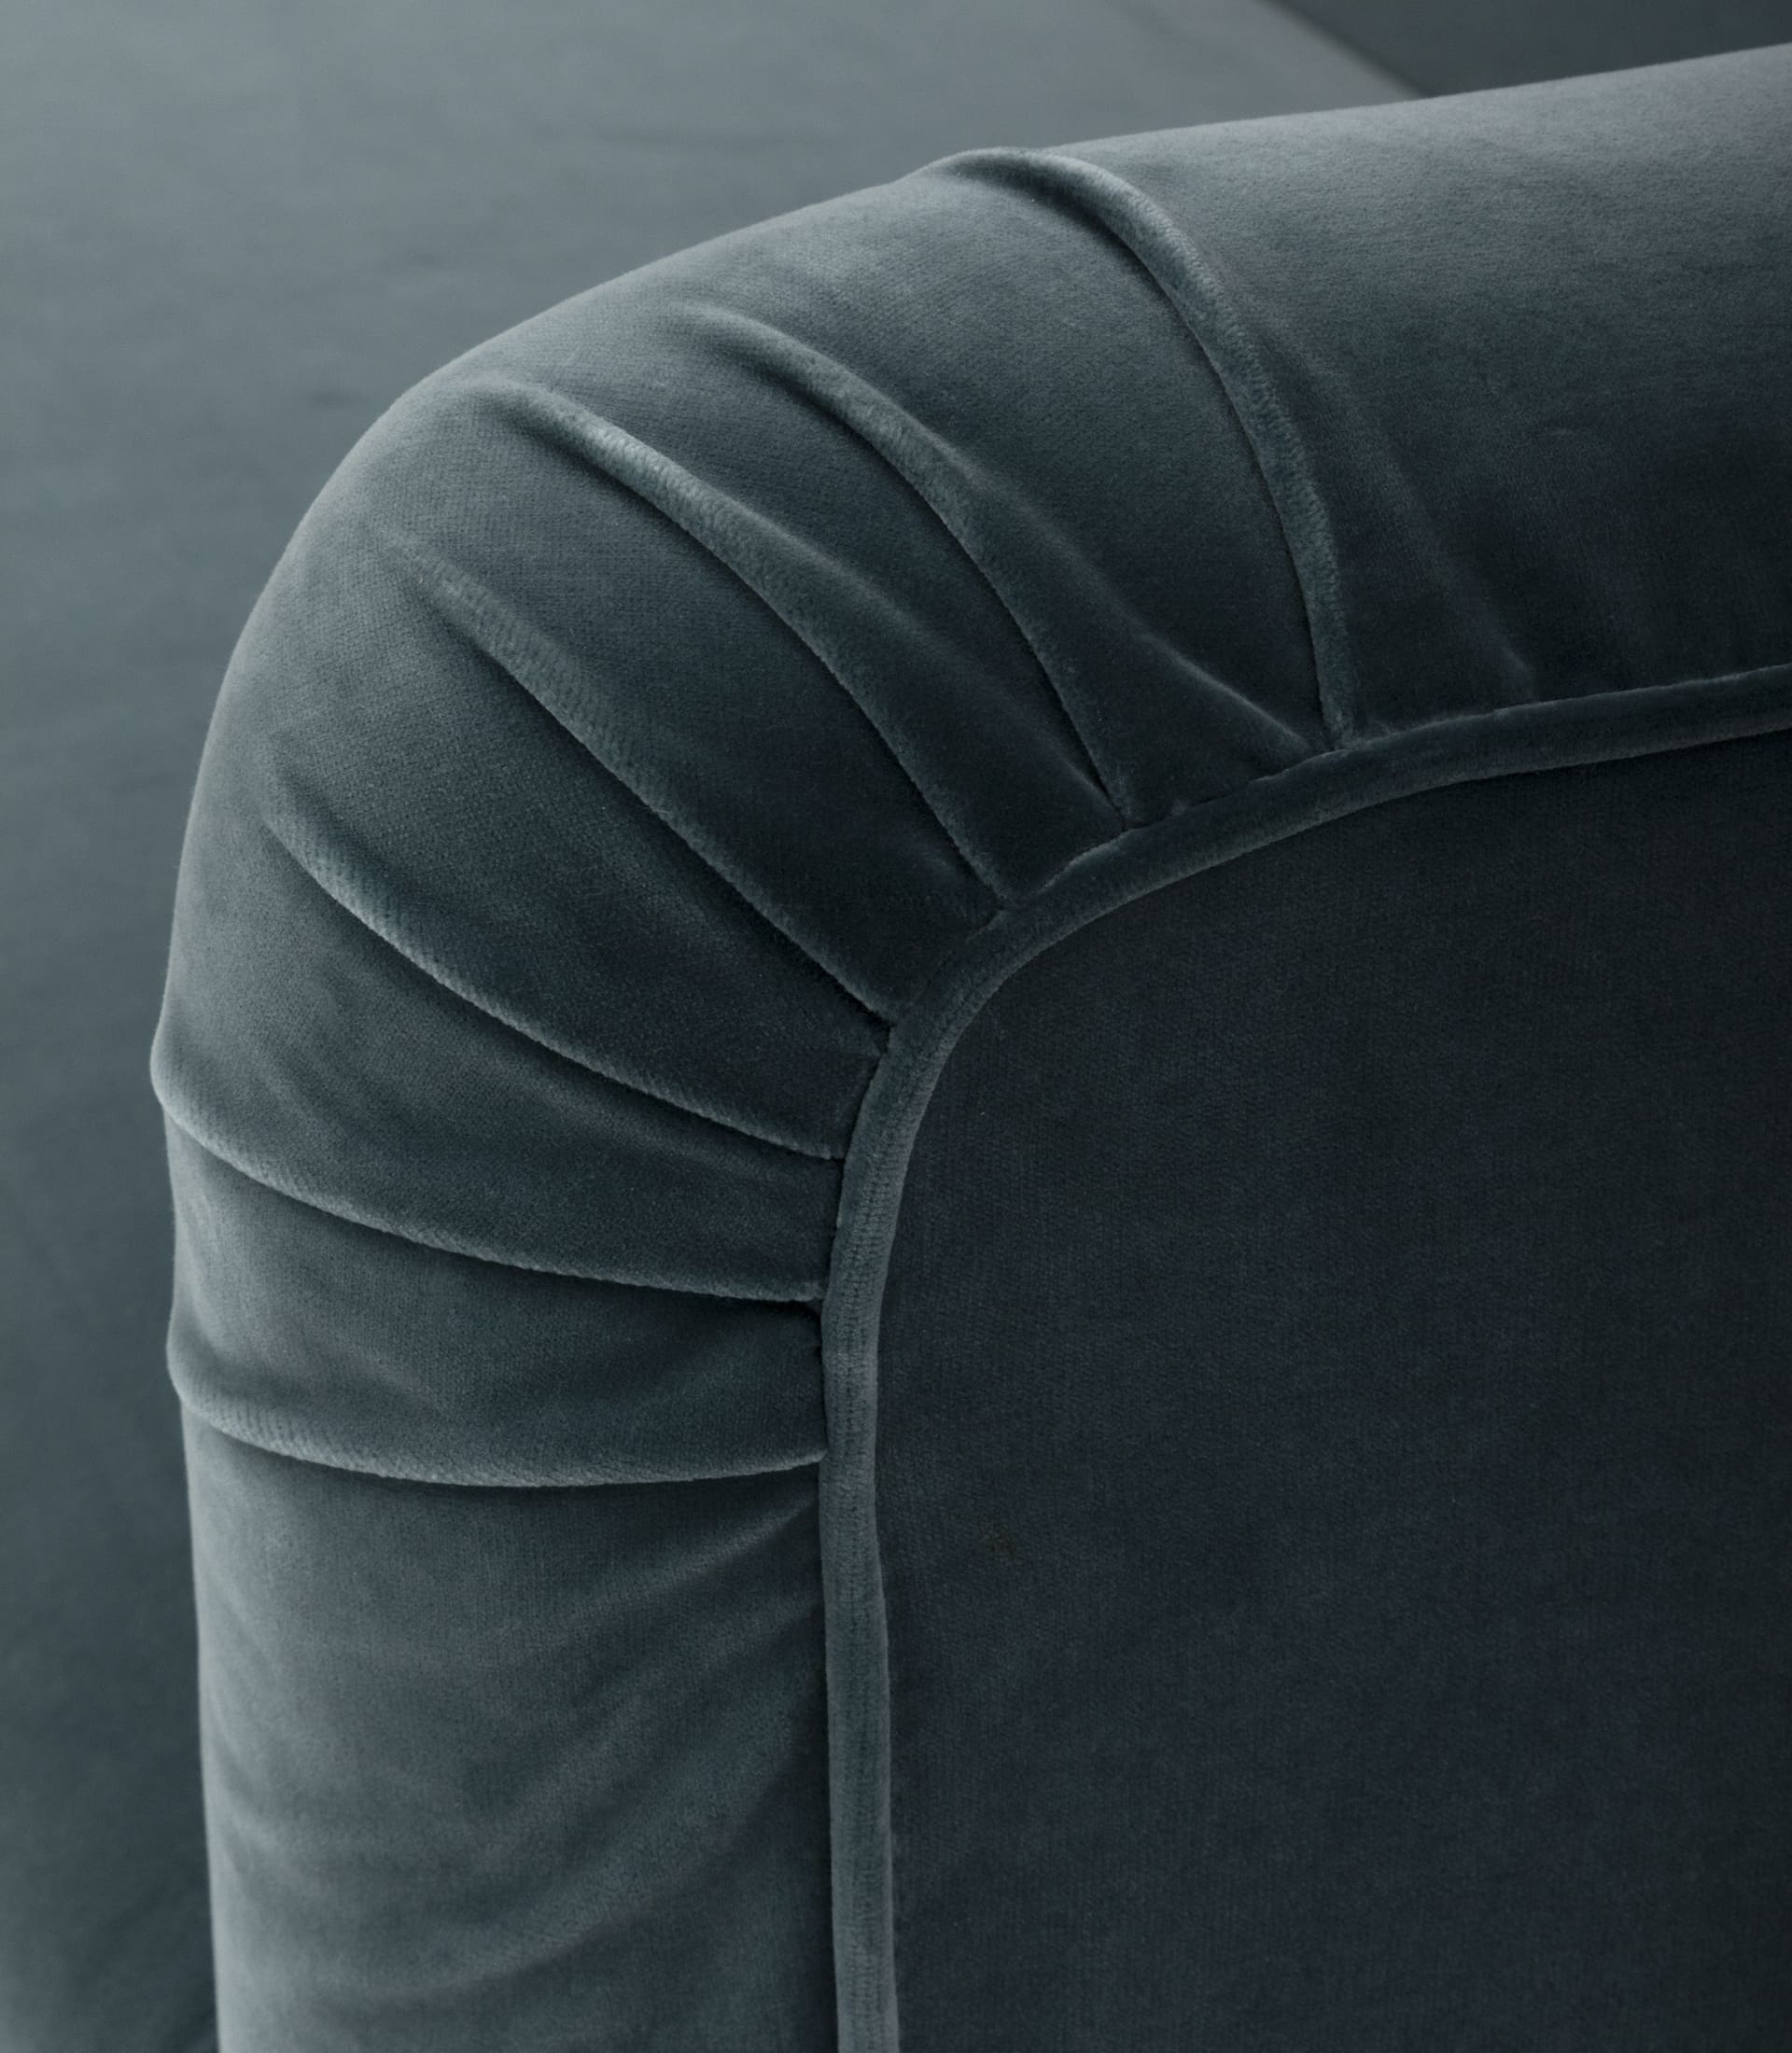 Sedute in poliuretano espanso D30 + falde di dacron + tela di cotone. Rete con maglia elettrosaldata